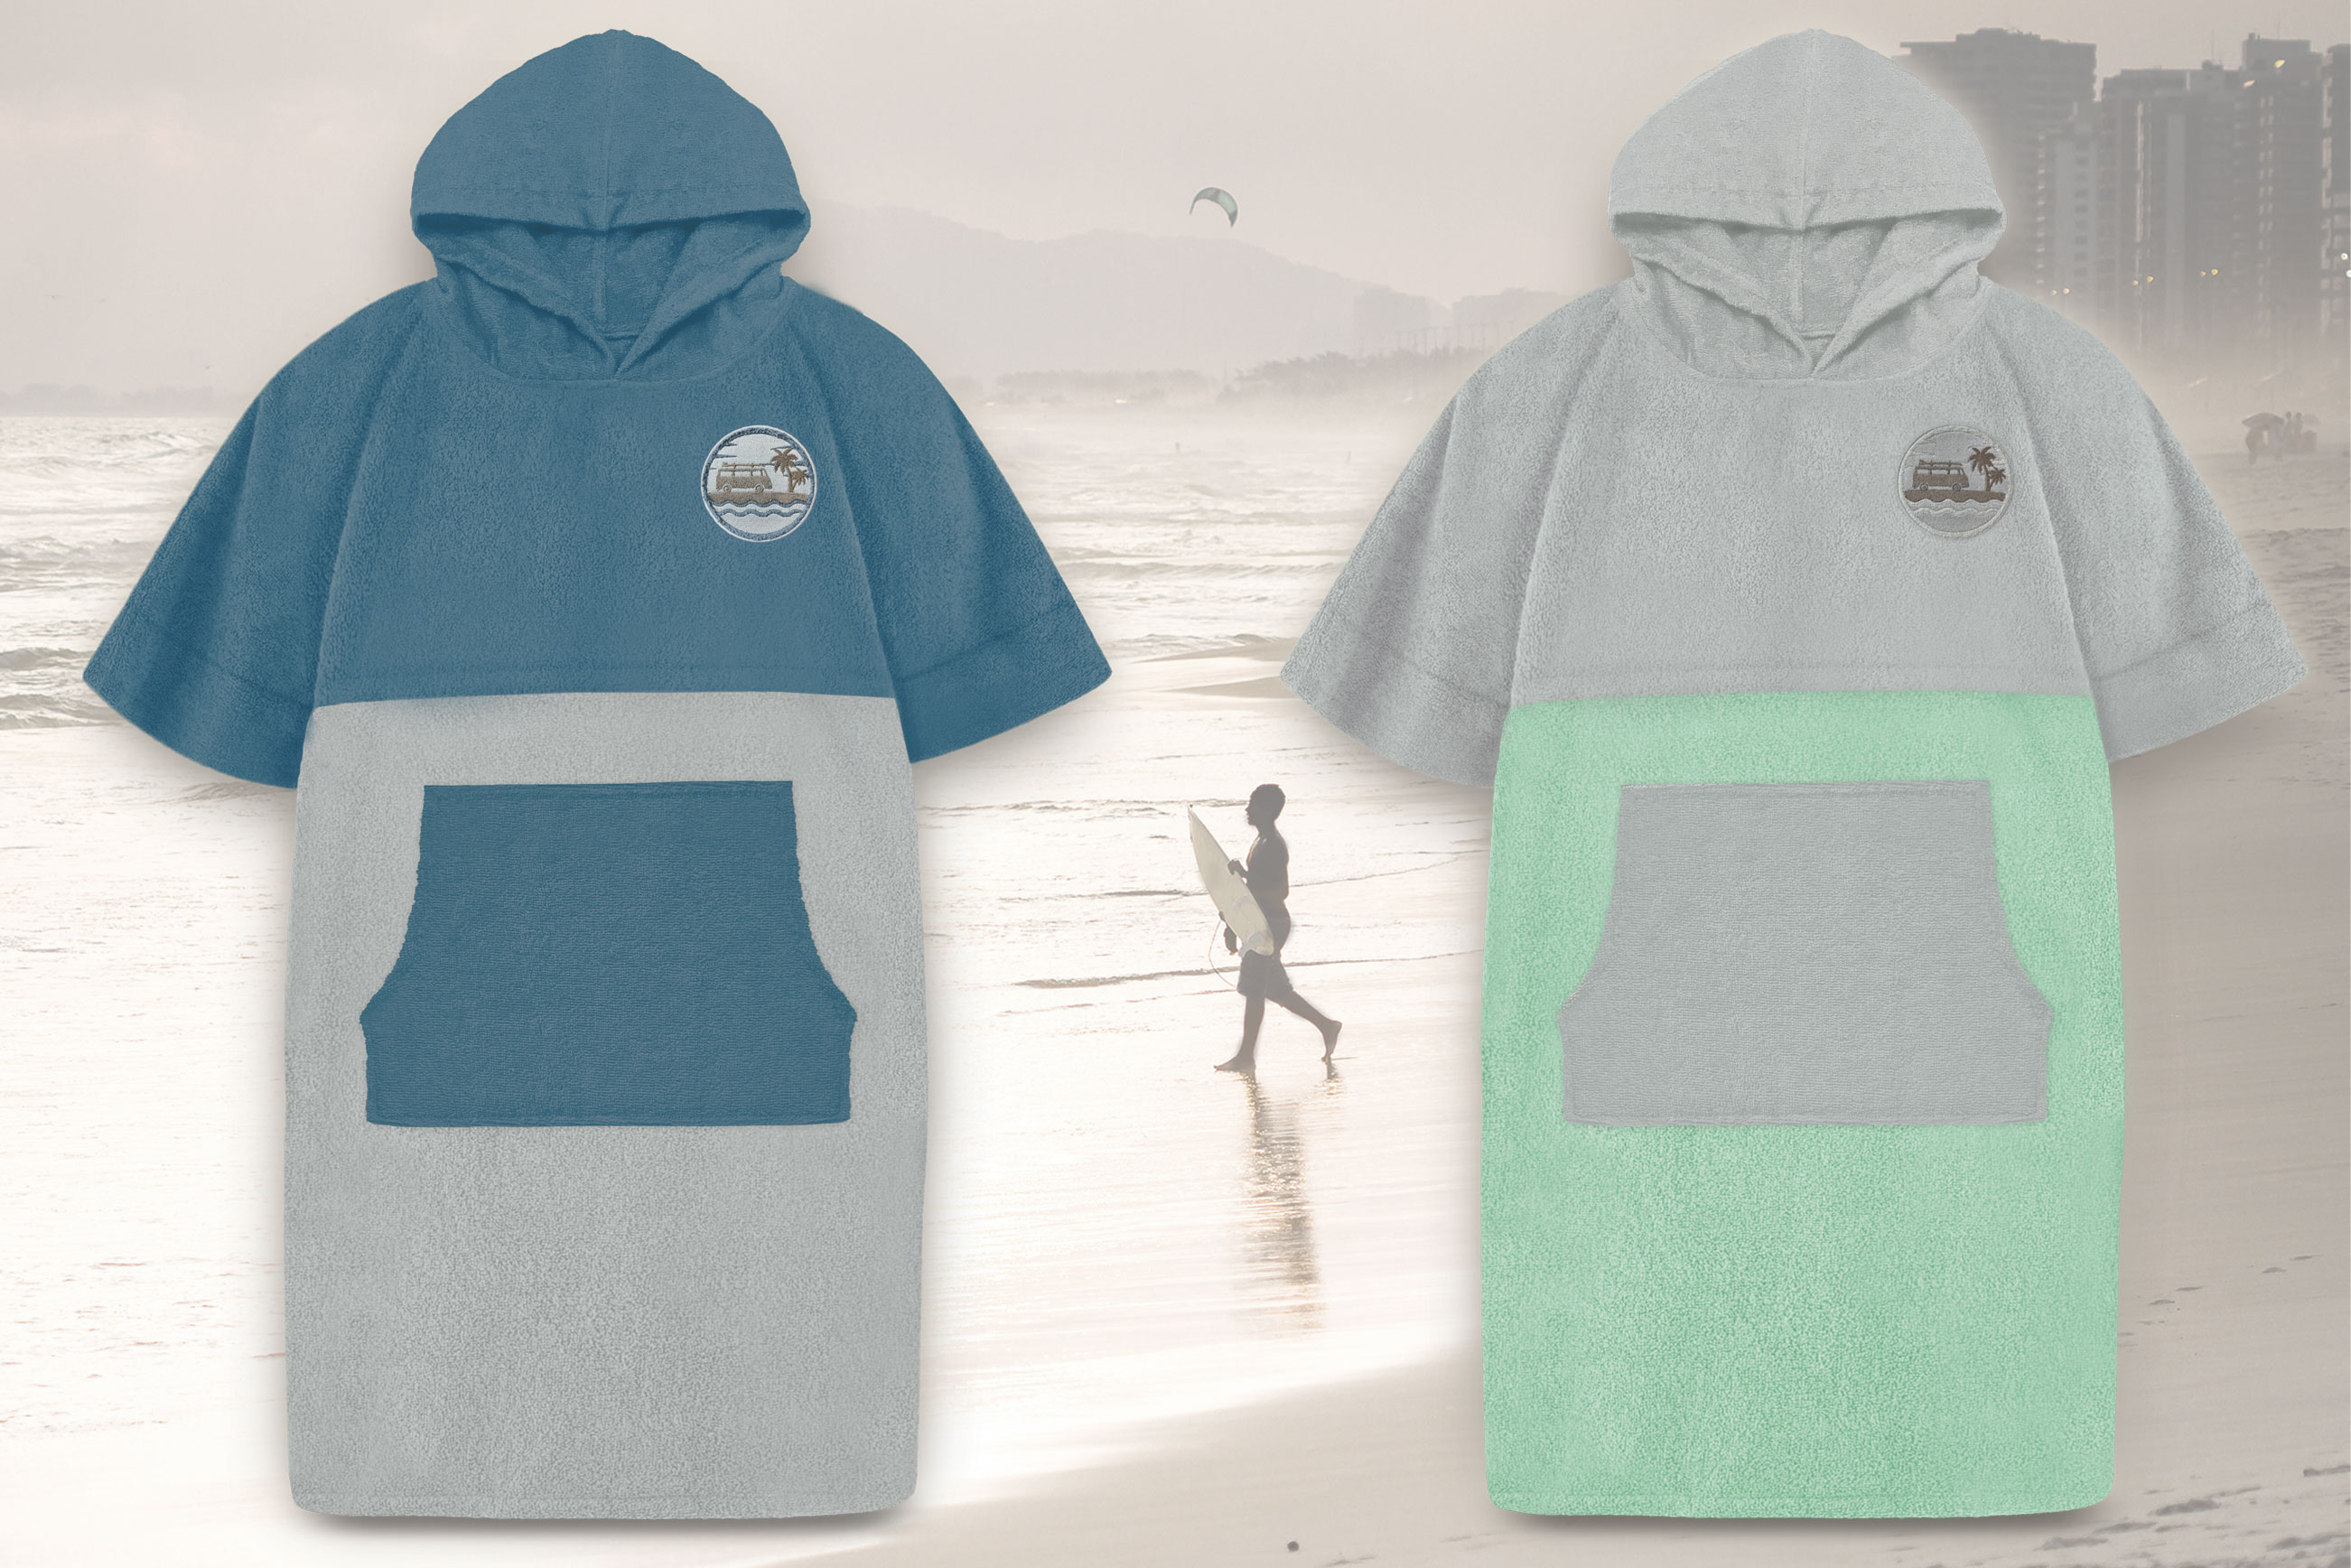  Surf- & Freizeit Poncho, Badejacke, Bademantel - der ideale Begleiter für jeden Wassersportler und Freizeitbegeisterten! 